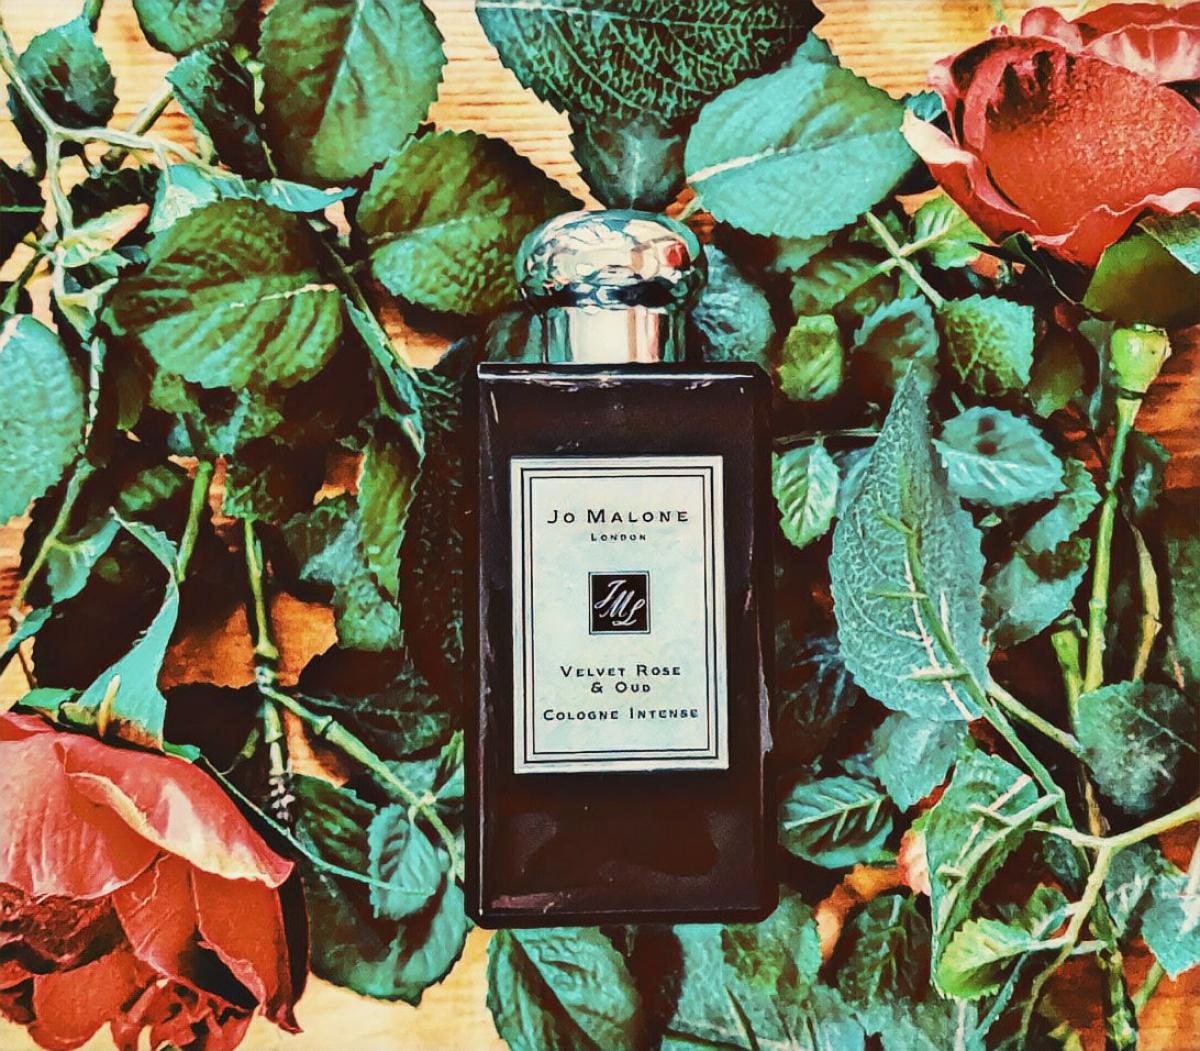 Velvet Rose & Oud Jo Malone London perfume - a fragrance for women and